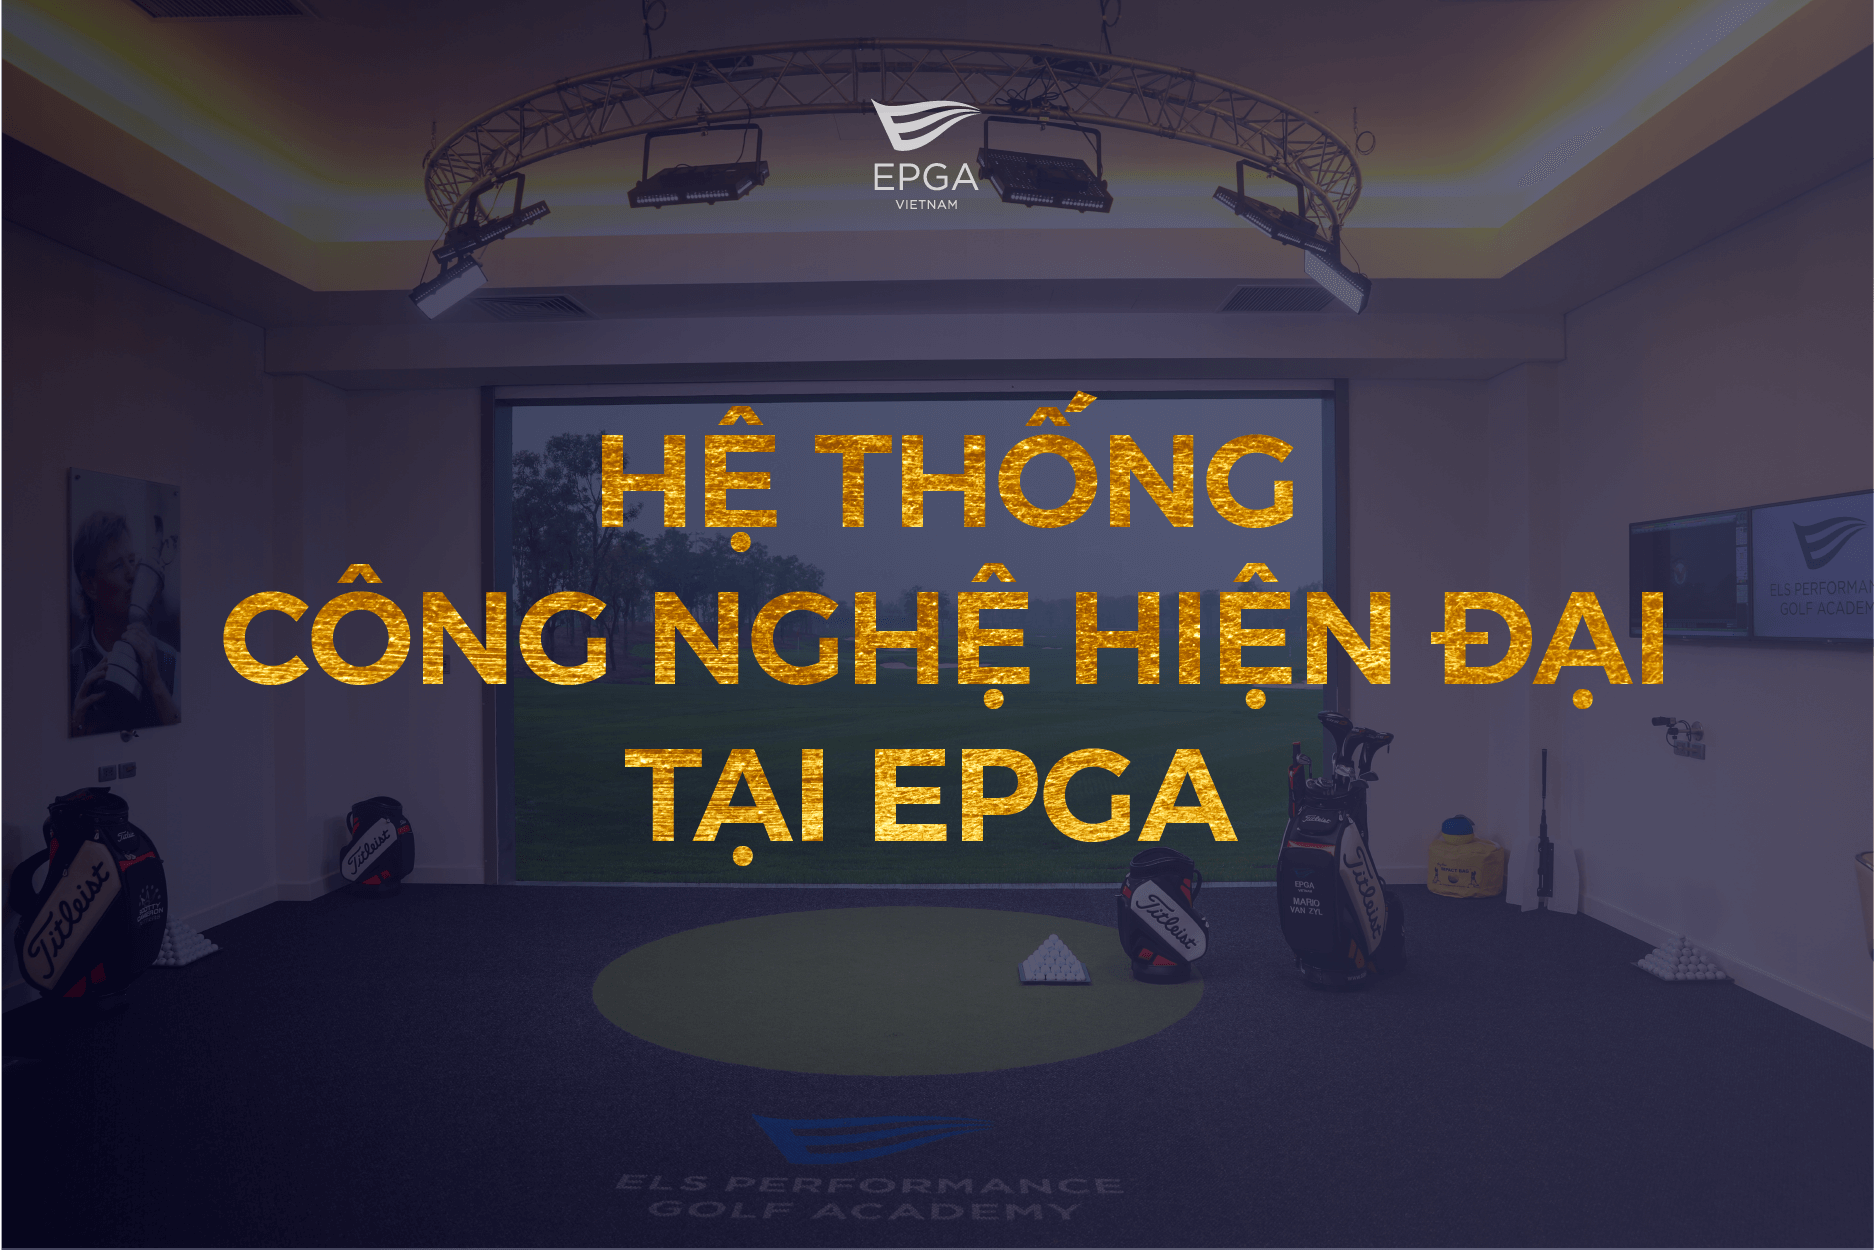 he-thong-cong-nghe-epga5png